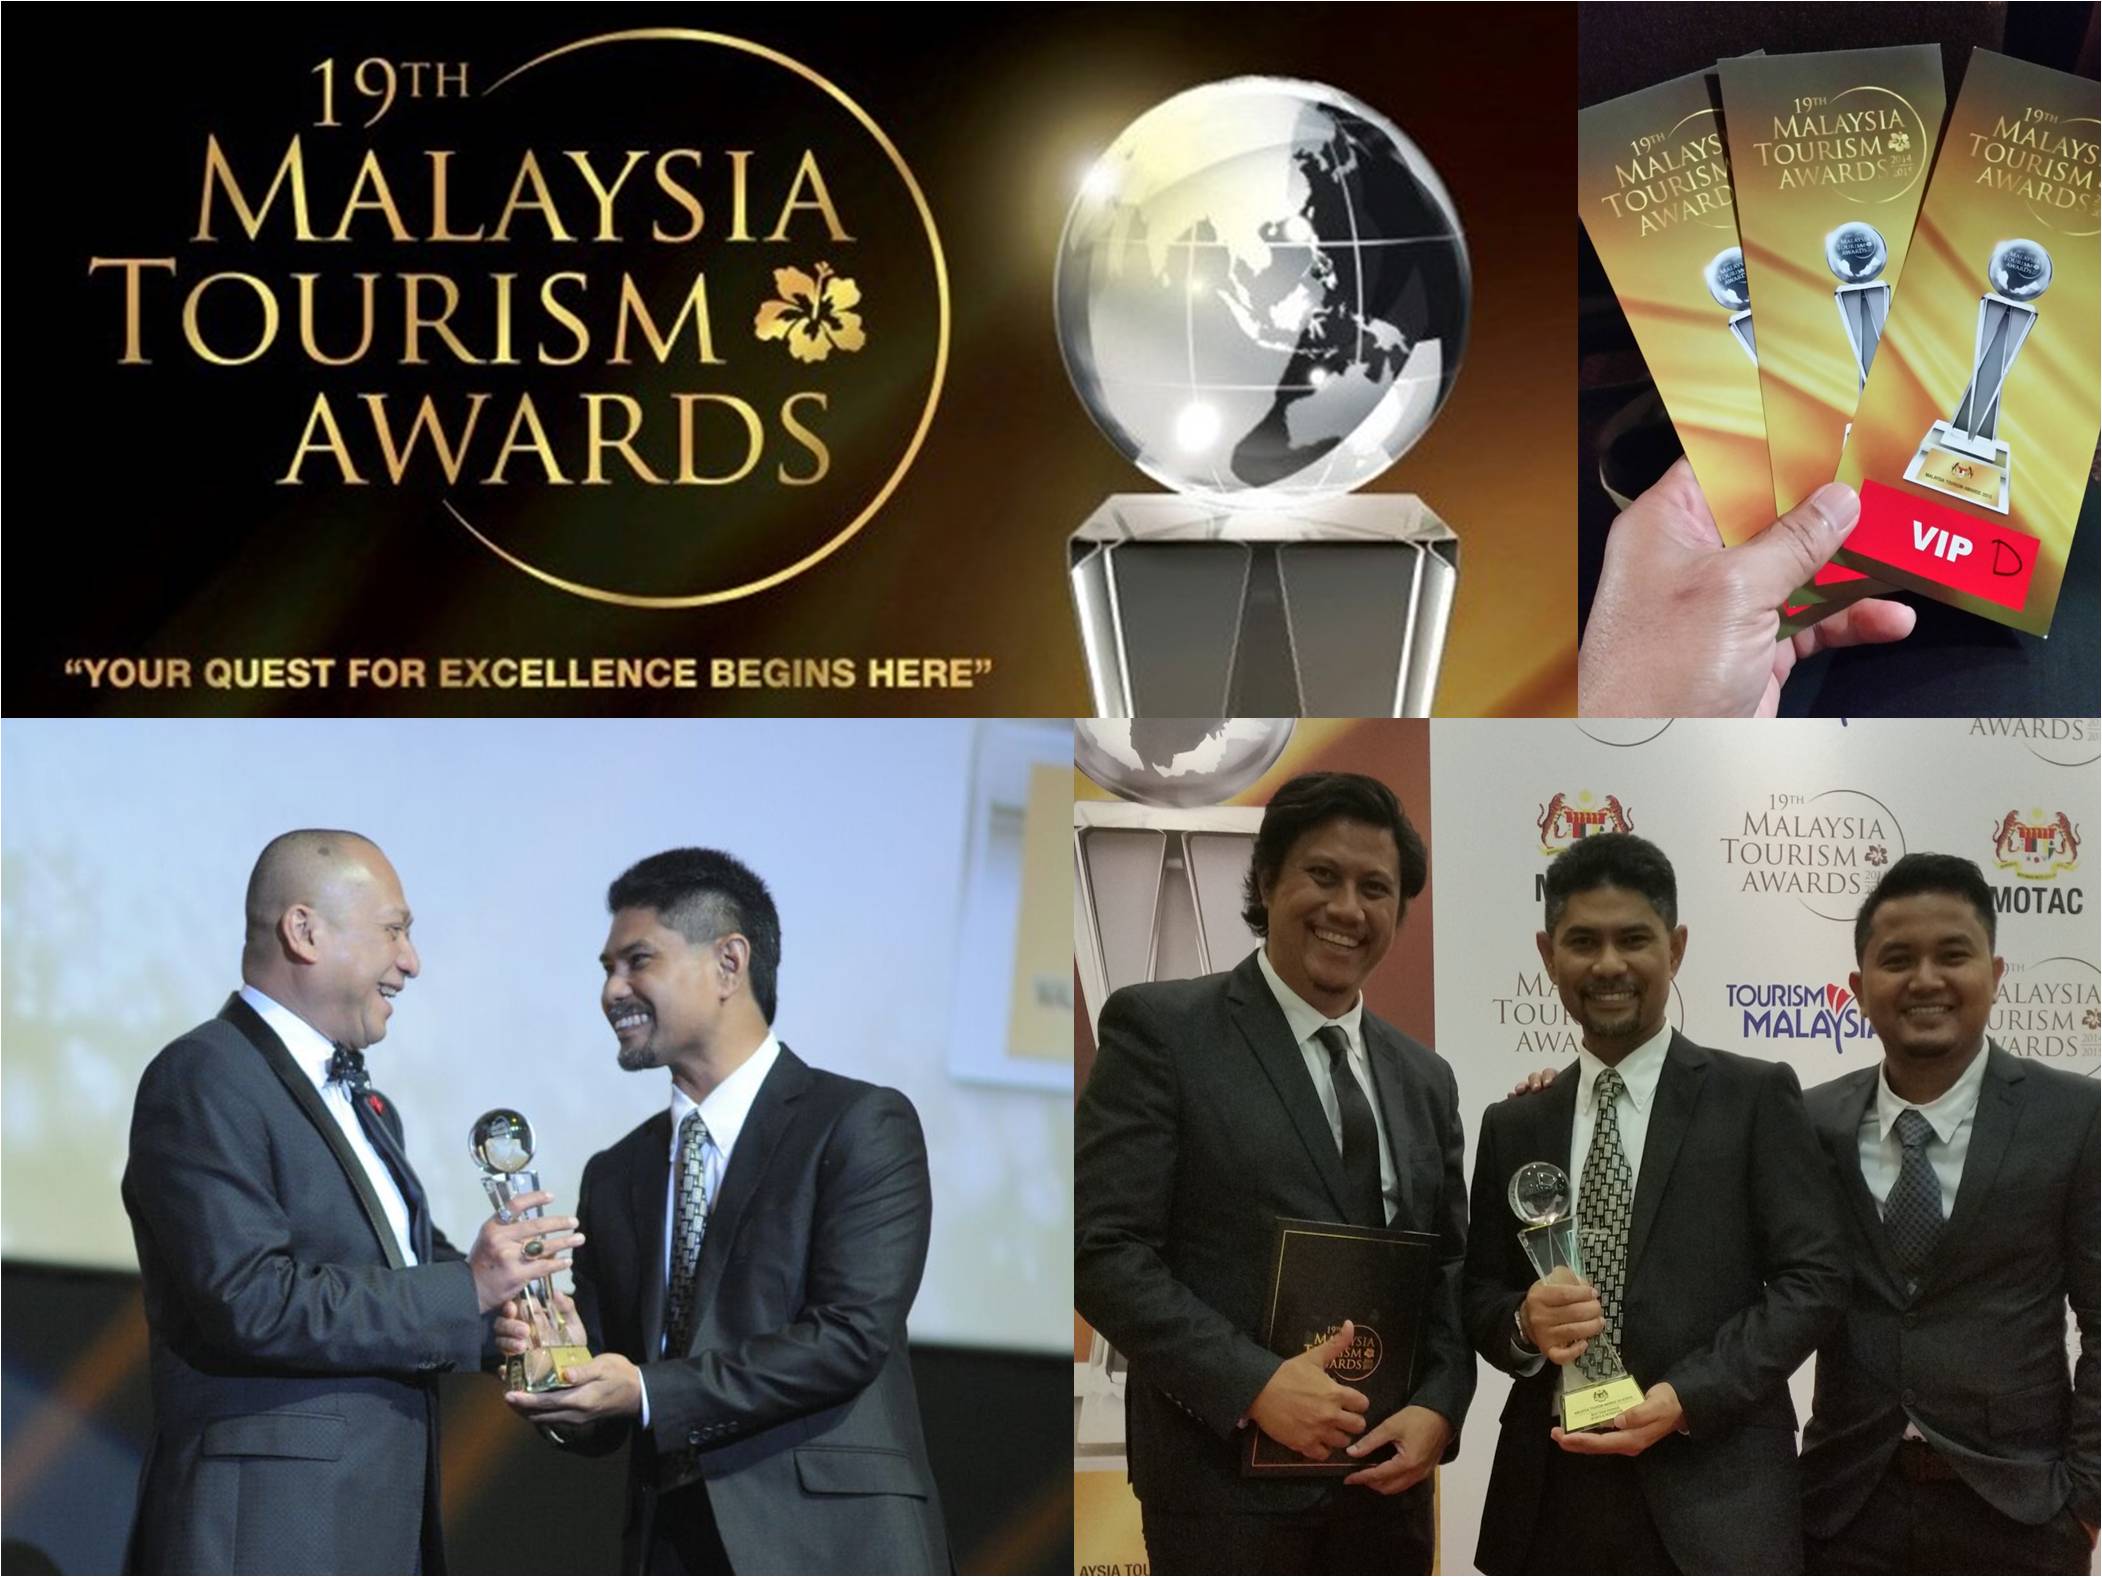 MMG bags the prestigious 2015 Malaysia Tourism Award